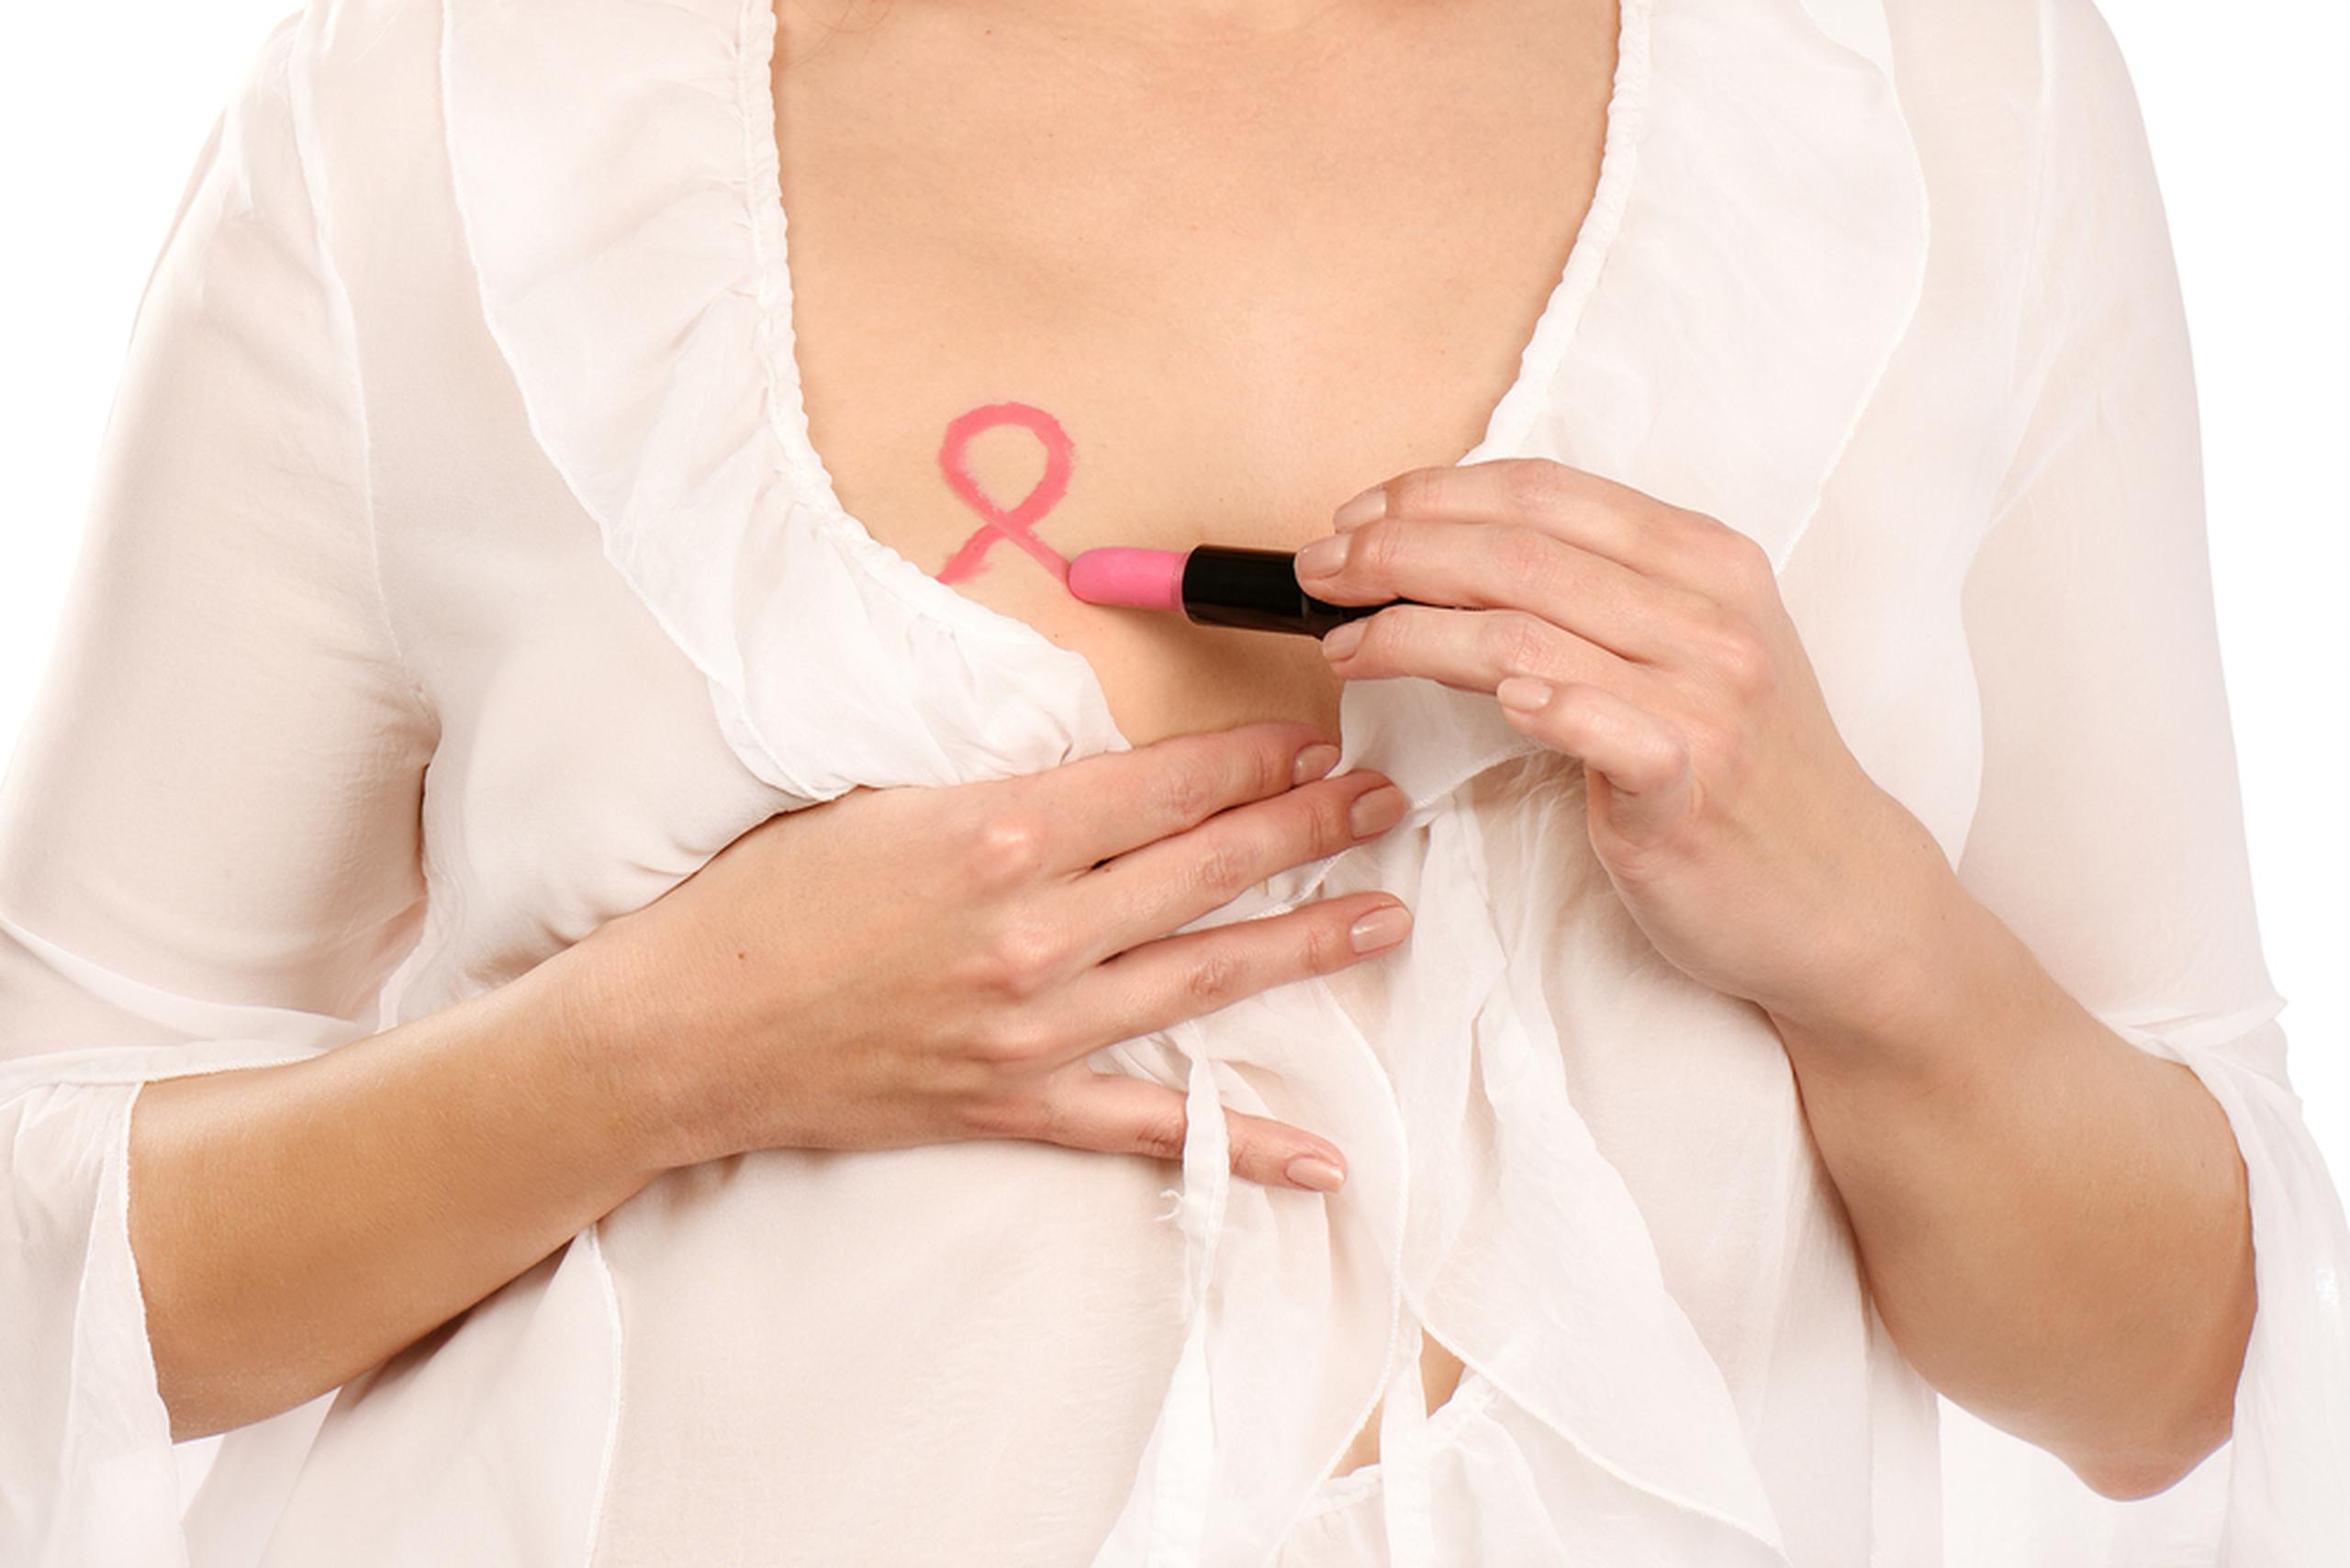 Más del 50 % de las pacientes a quienes se les recomienda una mastectomía desconocen sobre las opciones disponibles para reconstruir el seno.